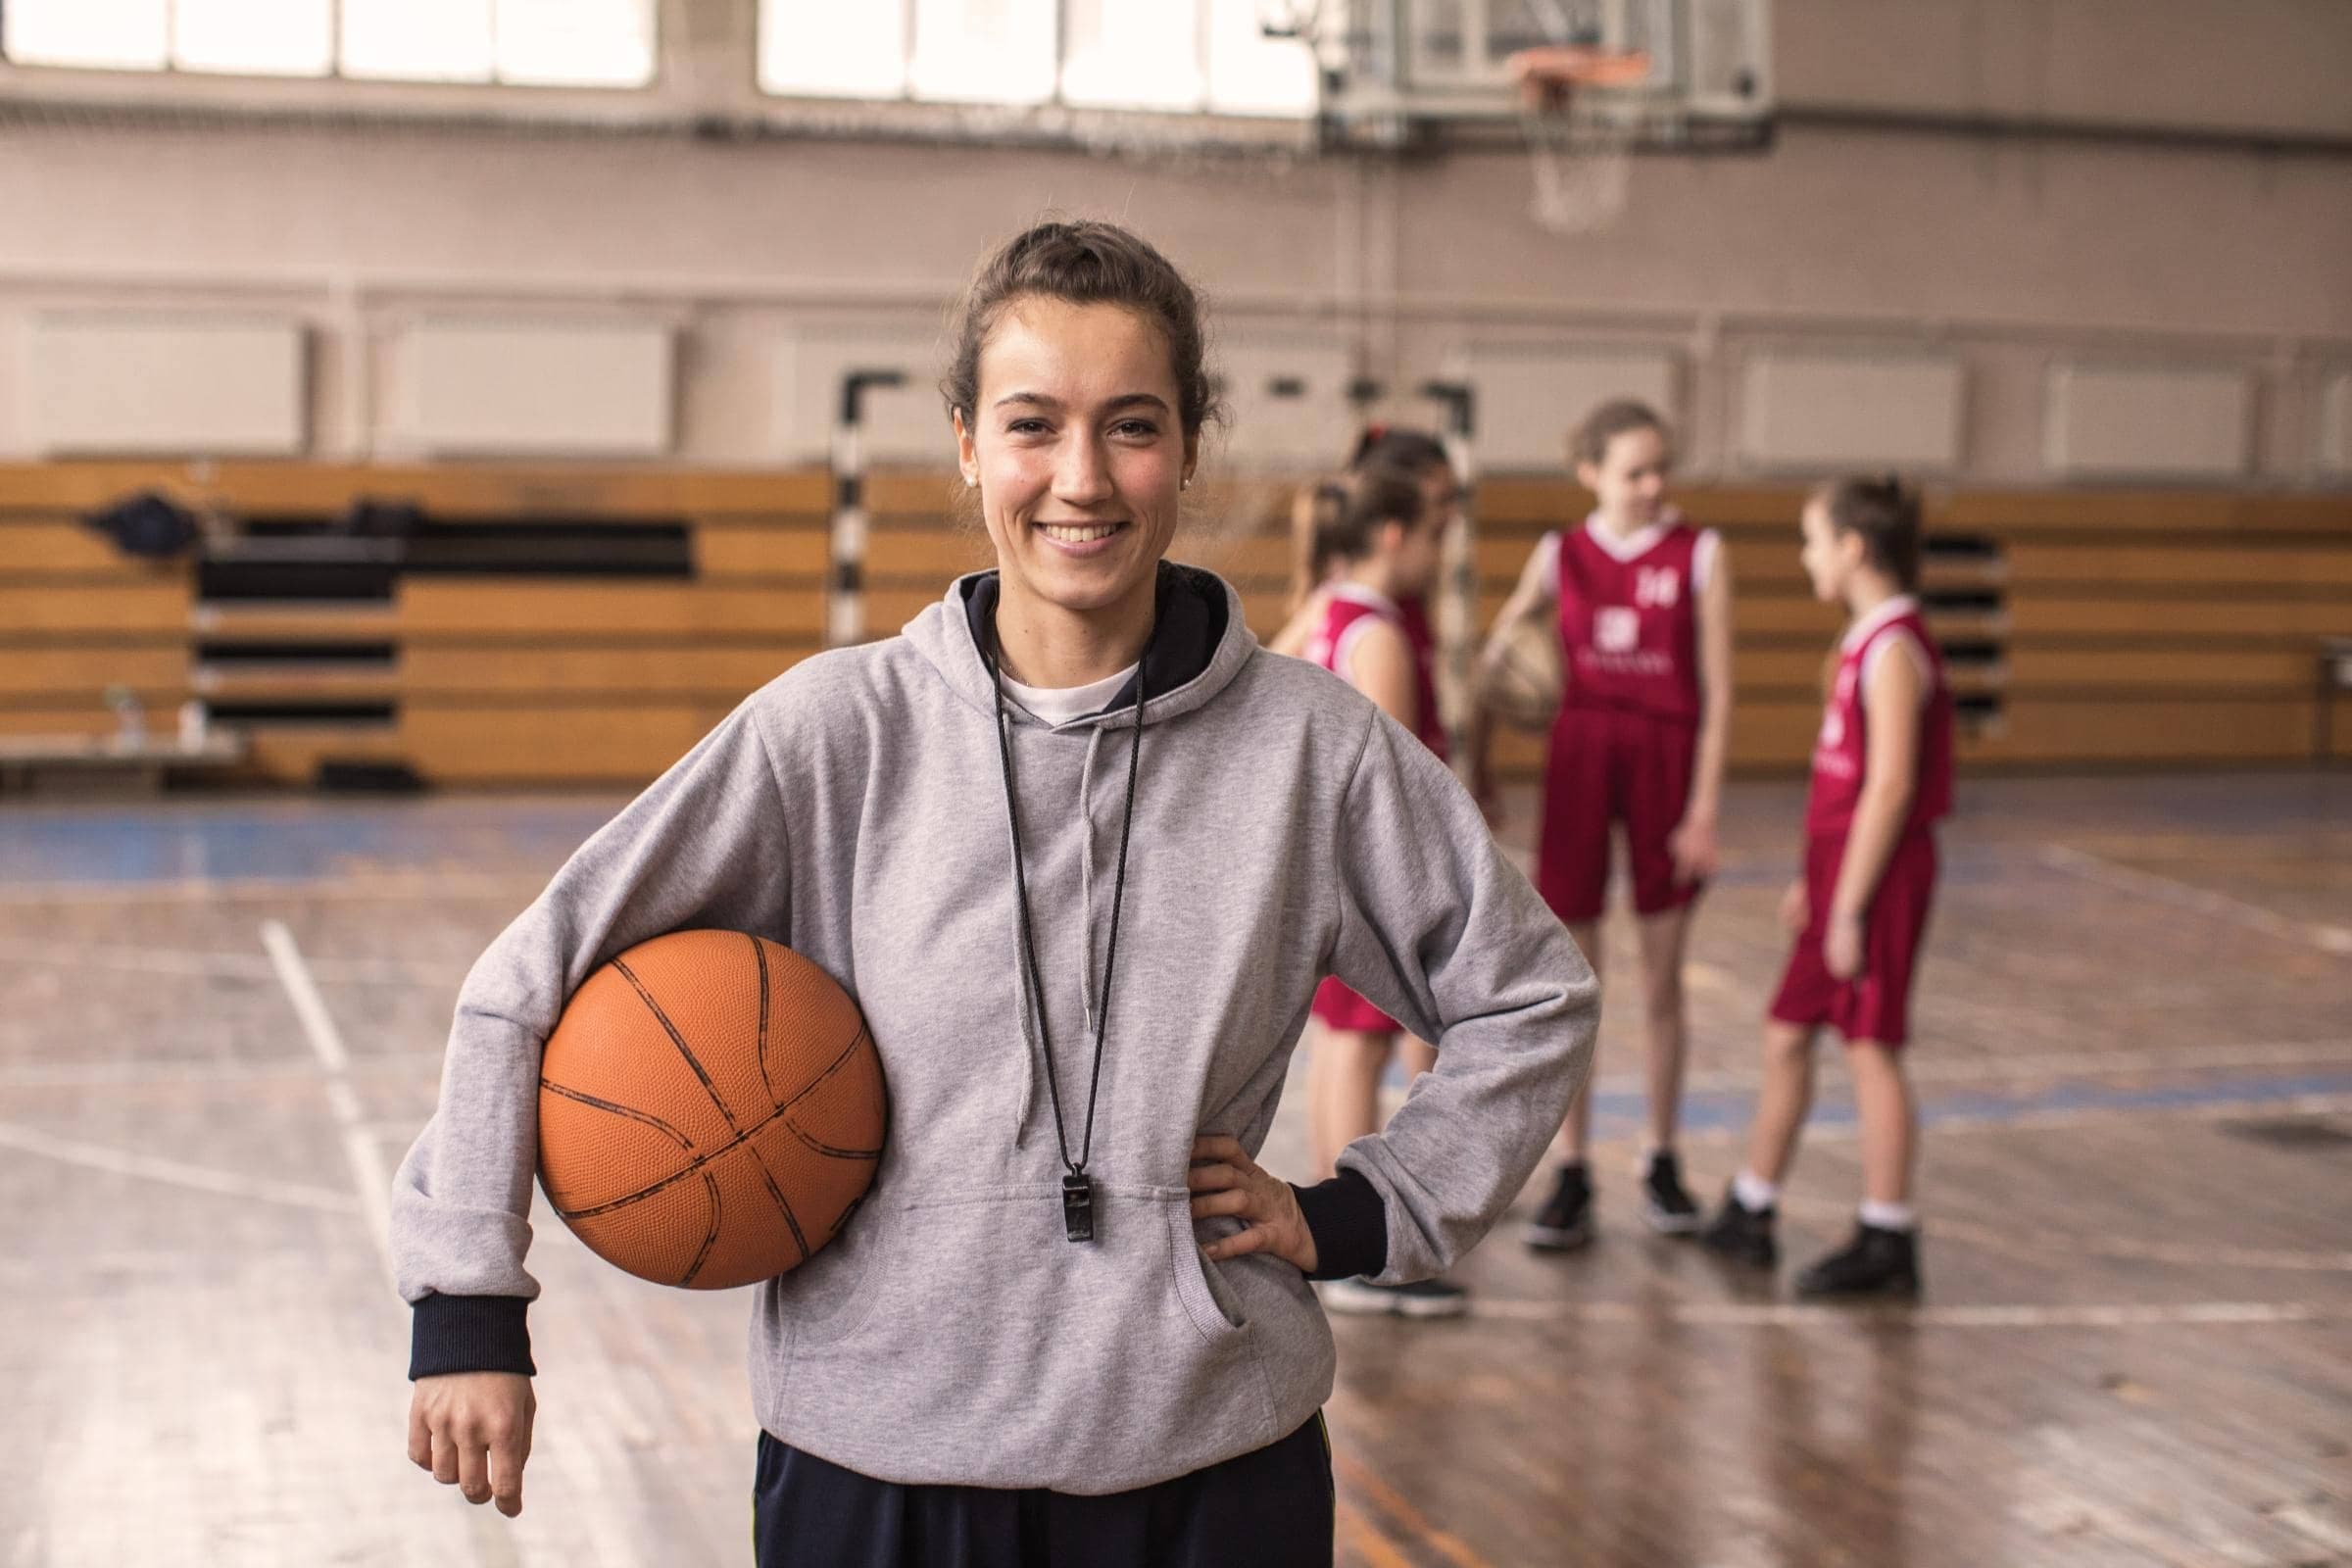 Vereinshaftpflichtversicherung von Hiscox: Junge Basketball-Spielerin blick lächelnd in die Kamera